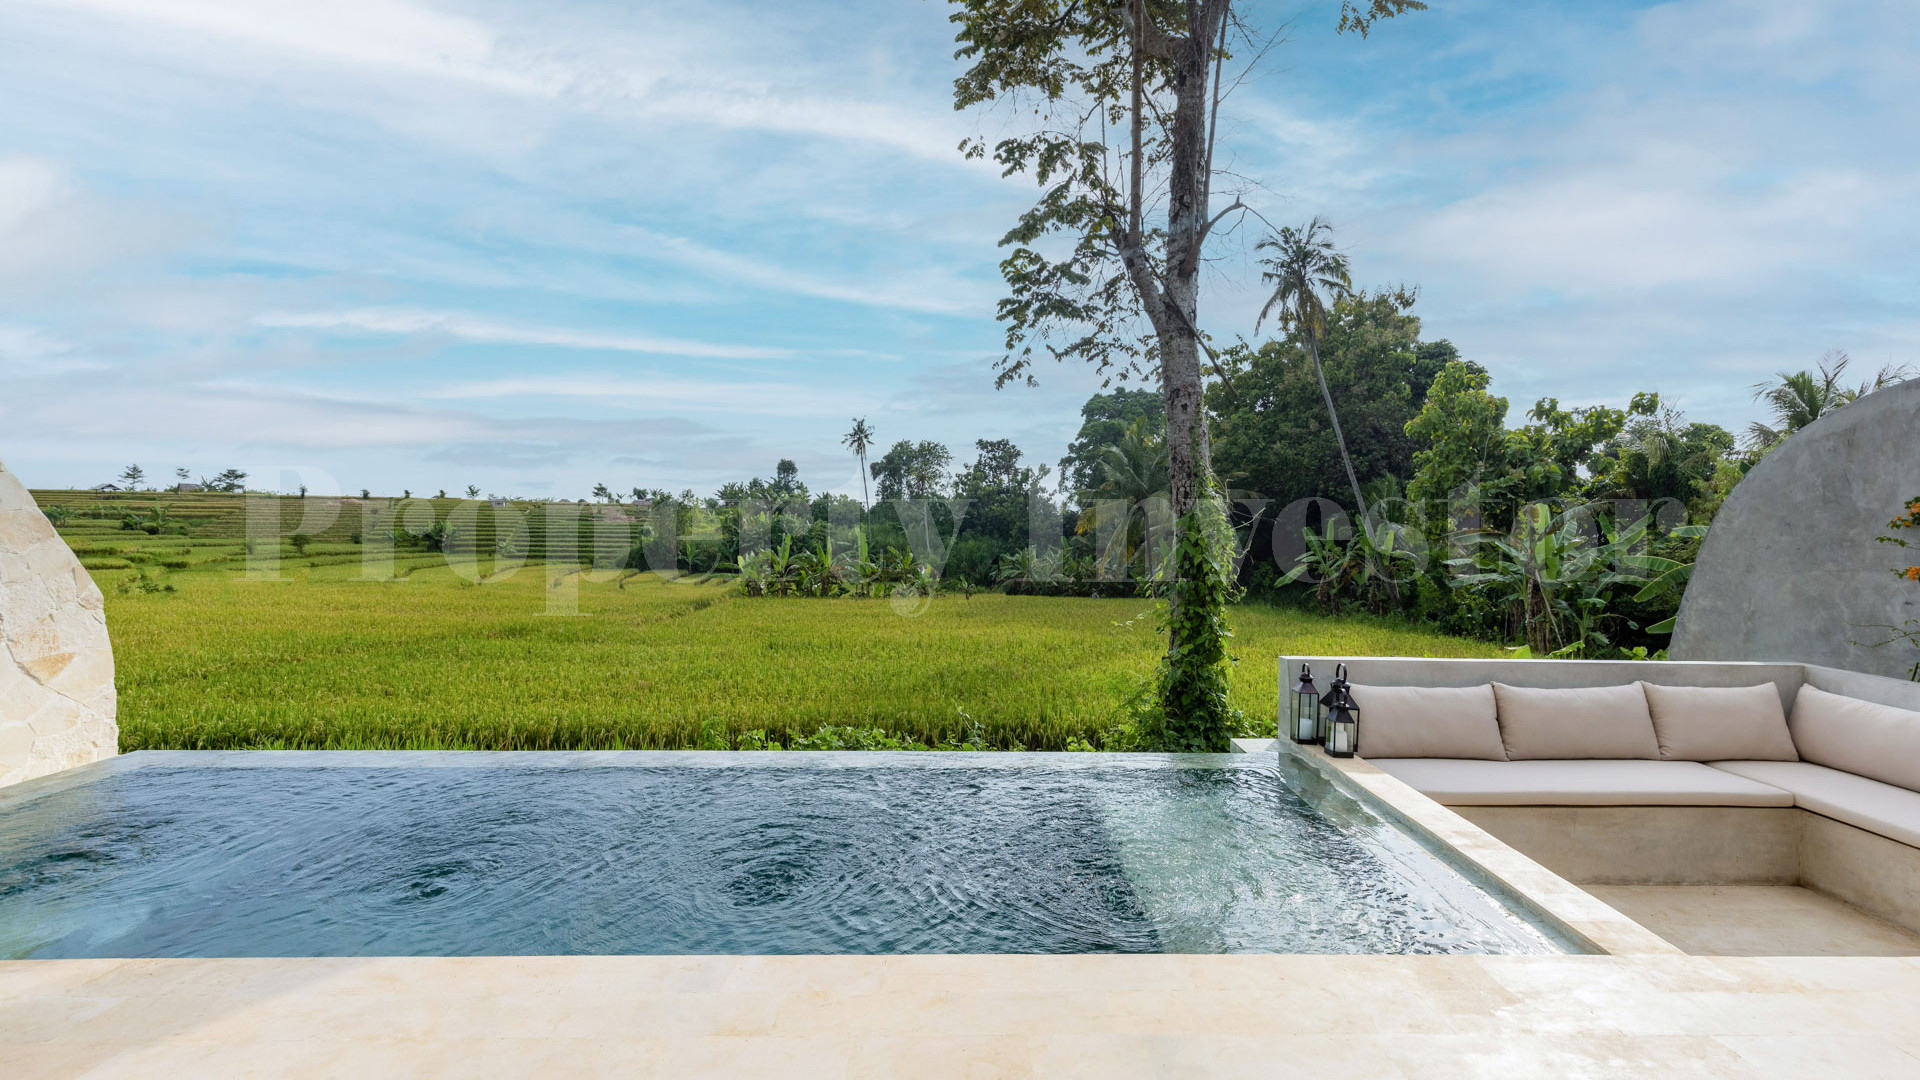 1-3 спальные лофт виллы с видом на рисовые поля рядом с Чангу, Бали